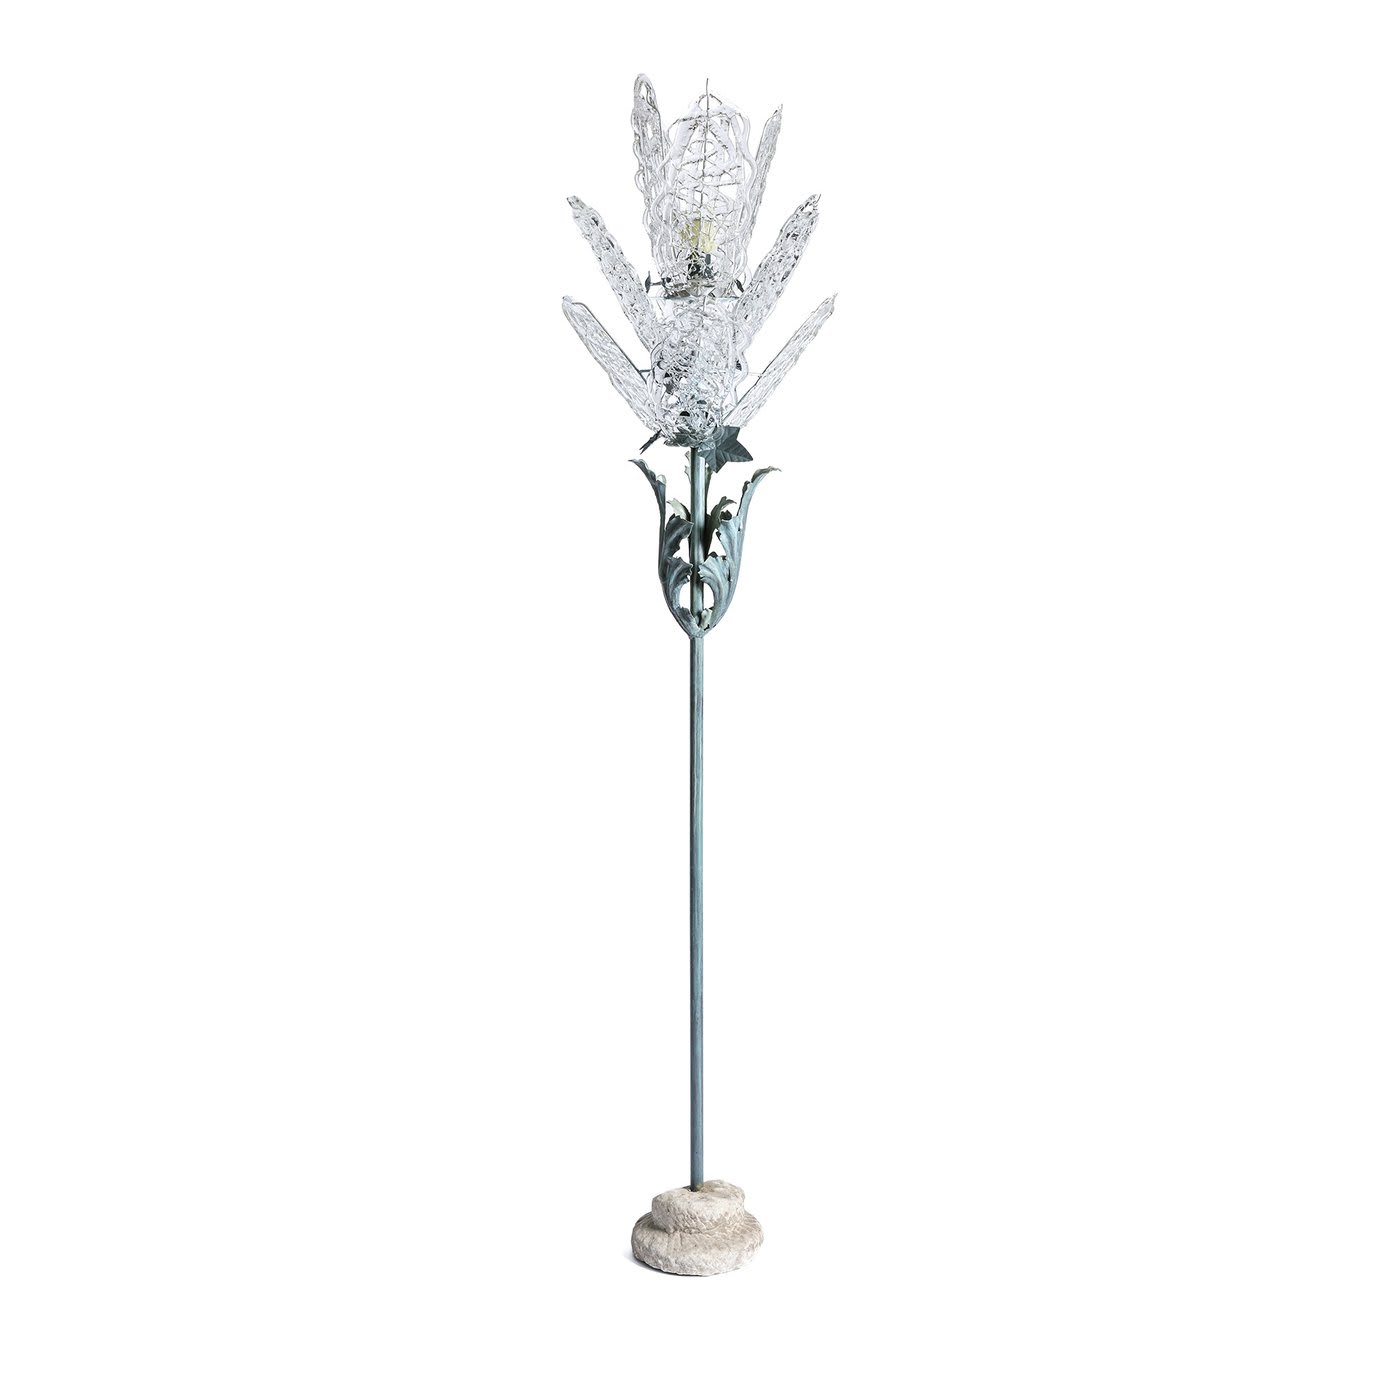 Fiore Floor Lamp - Edi Chirumbolo